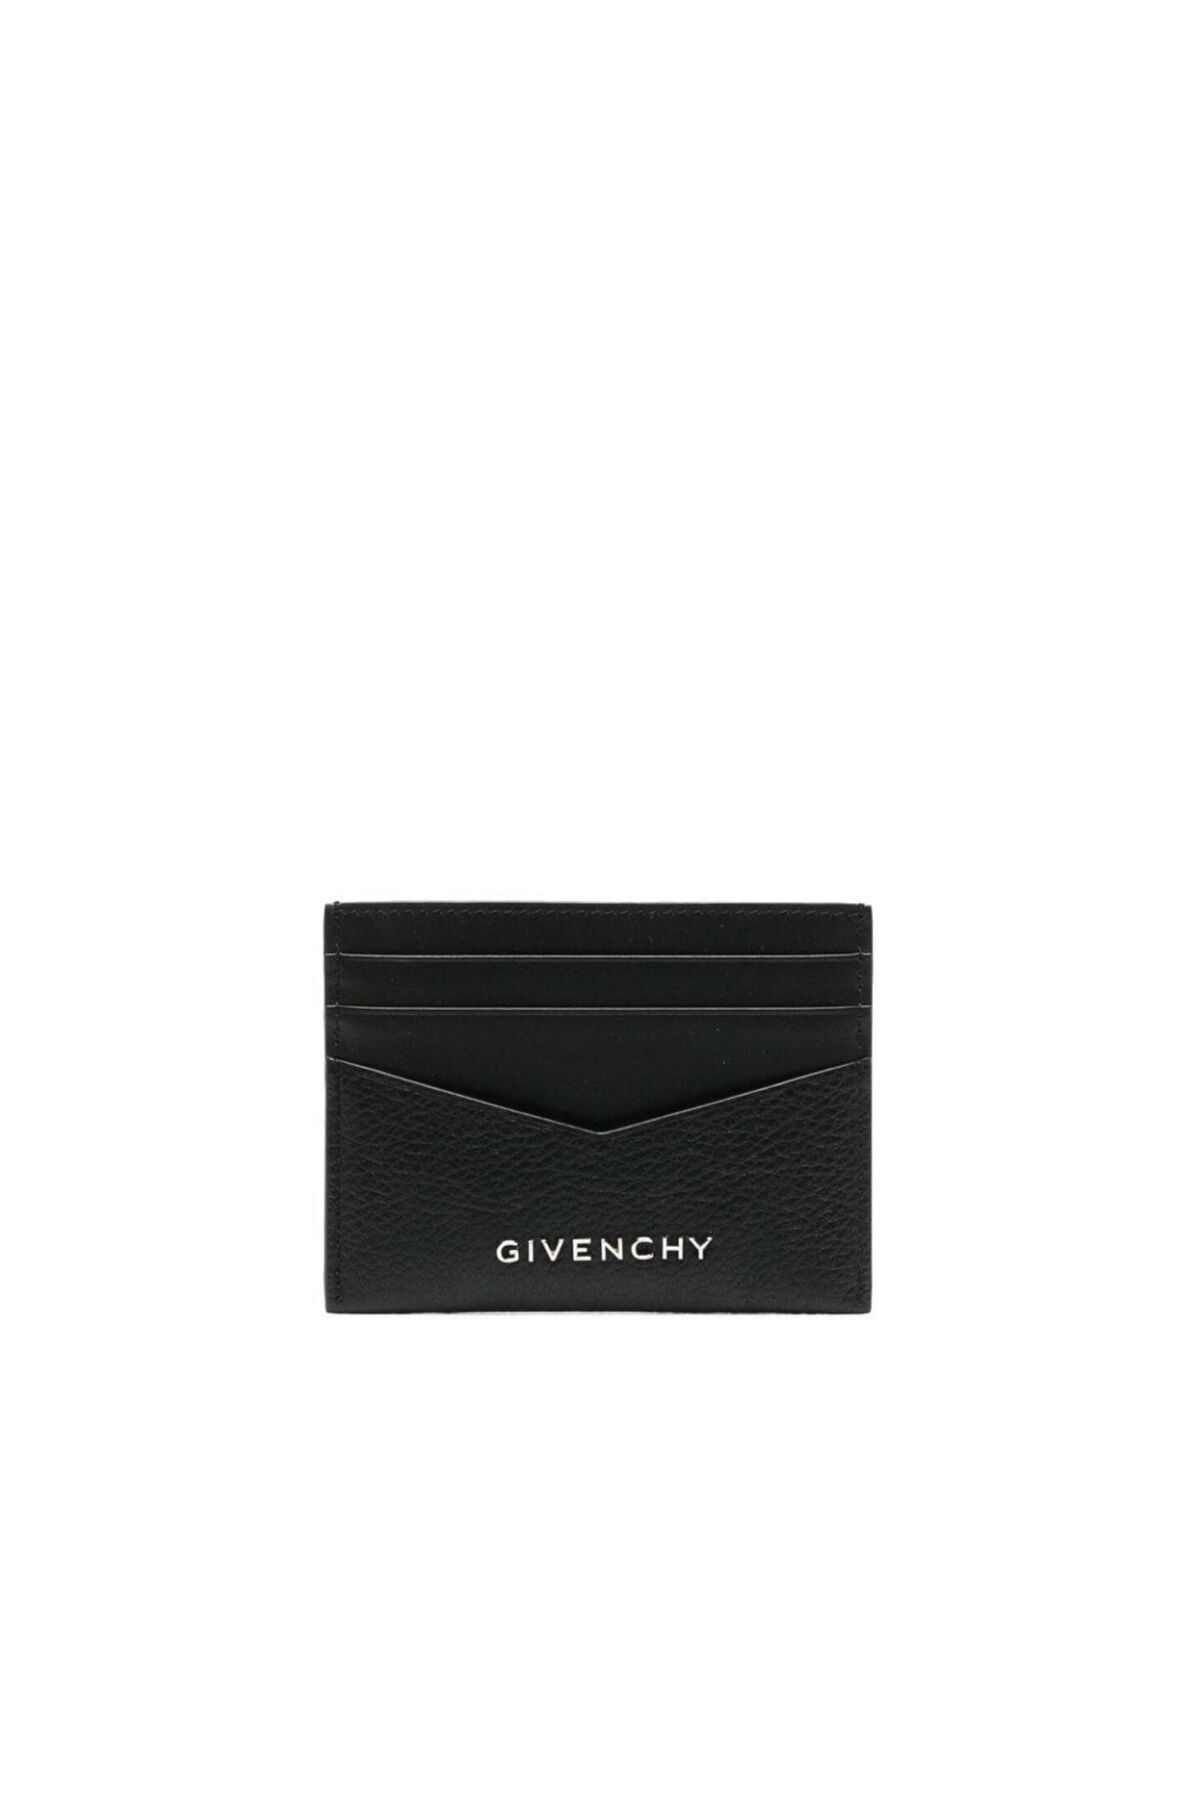 Givenchy Black Logo-Plaque Leather Cardholder